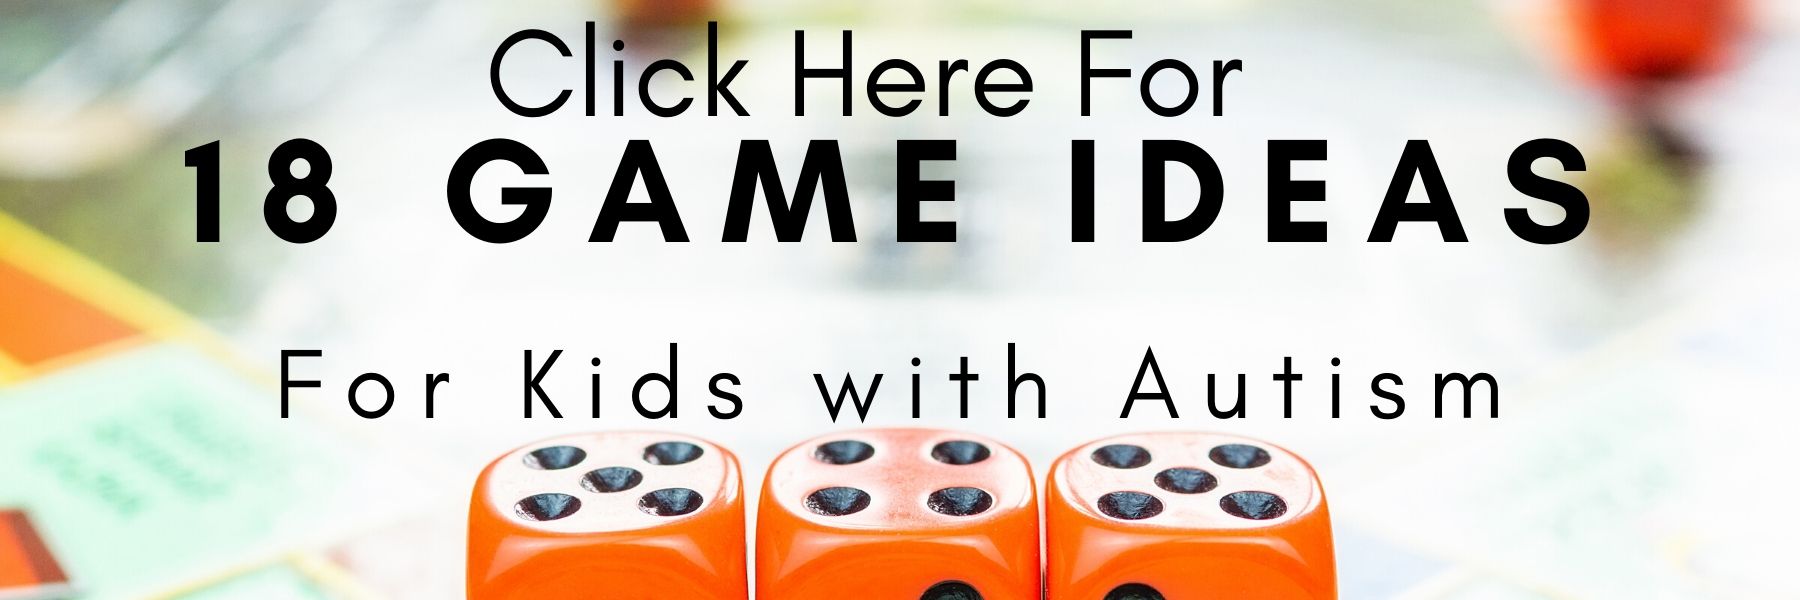 game ideas autism